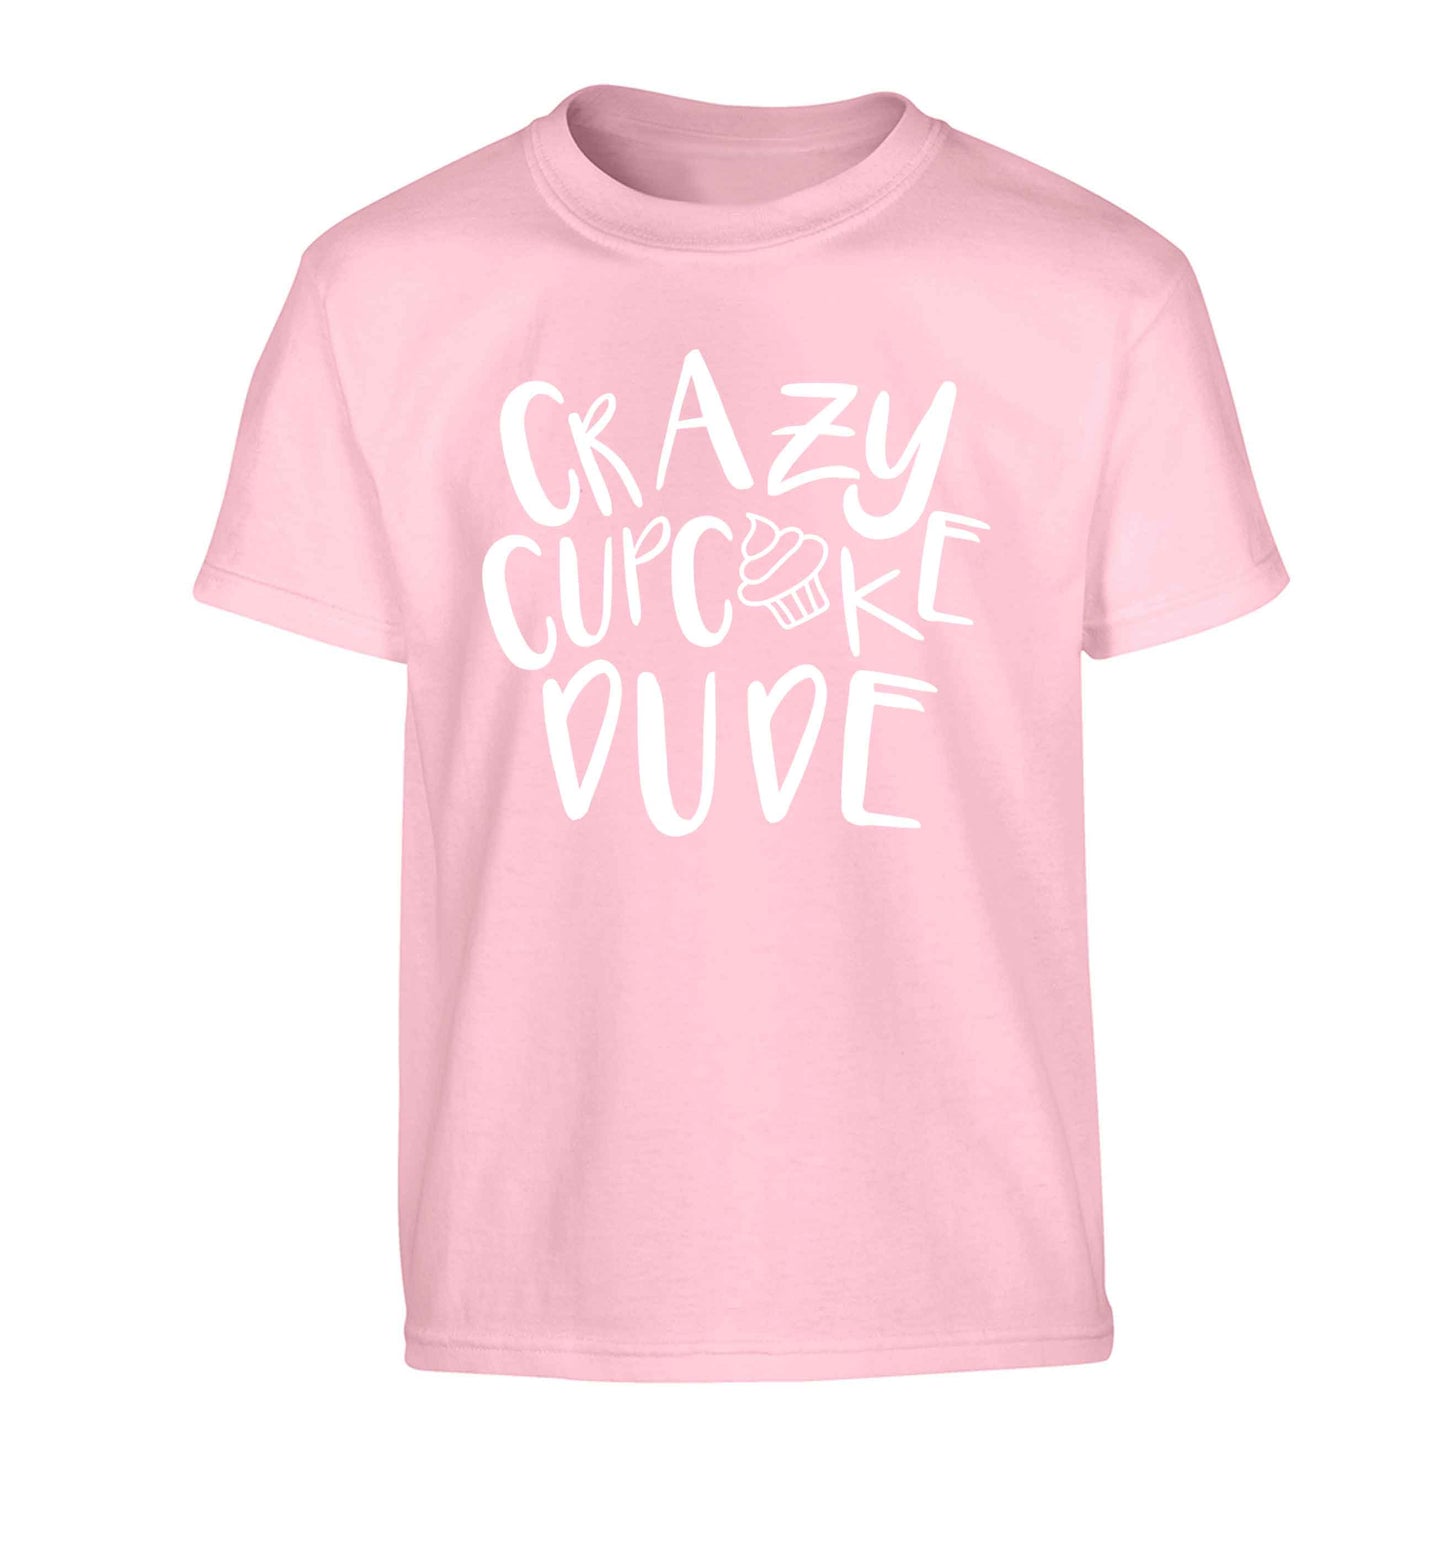 Crazy cupcake dude Children's light pink Tshirt 12-13 Years